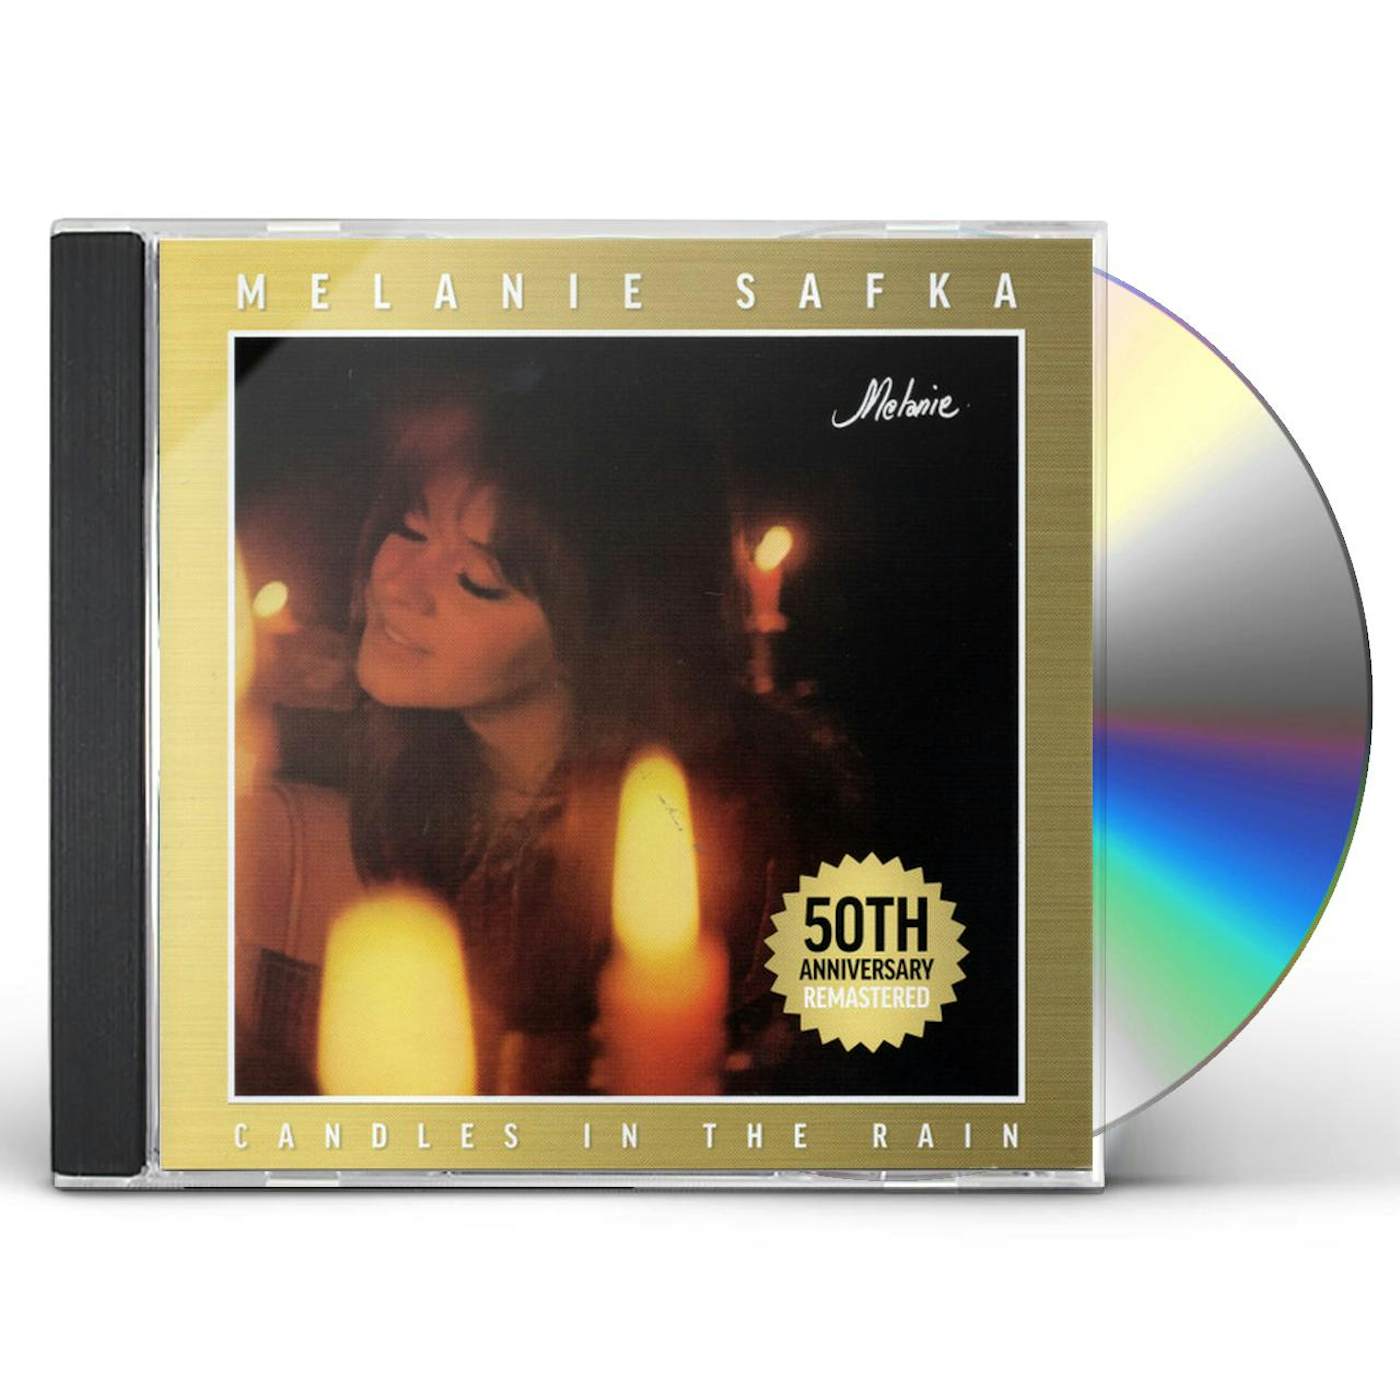 Melanie CANDLES IN THE RAIN: 50TH ANNIVERSARY CD